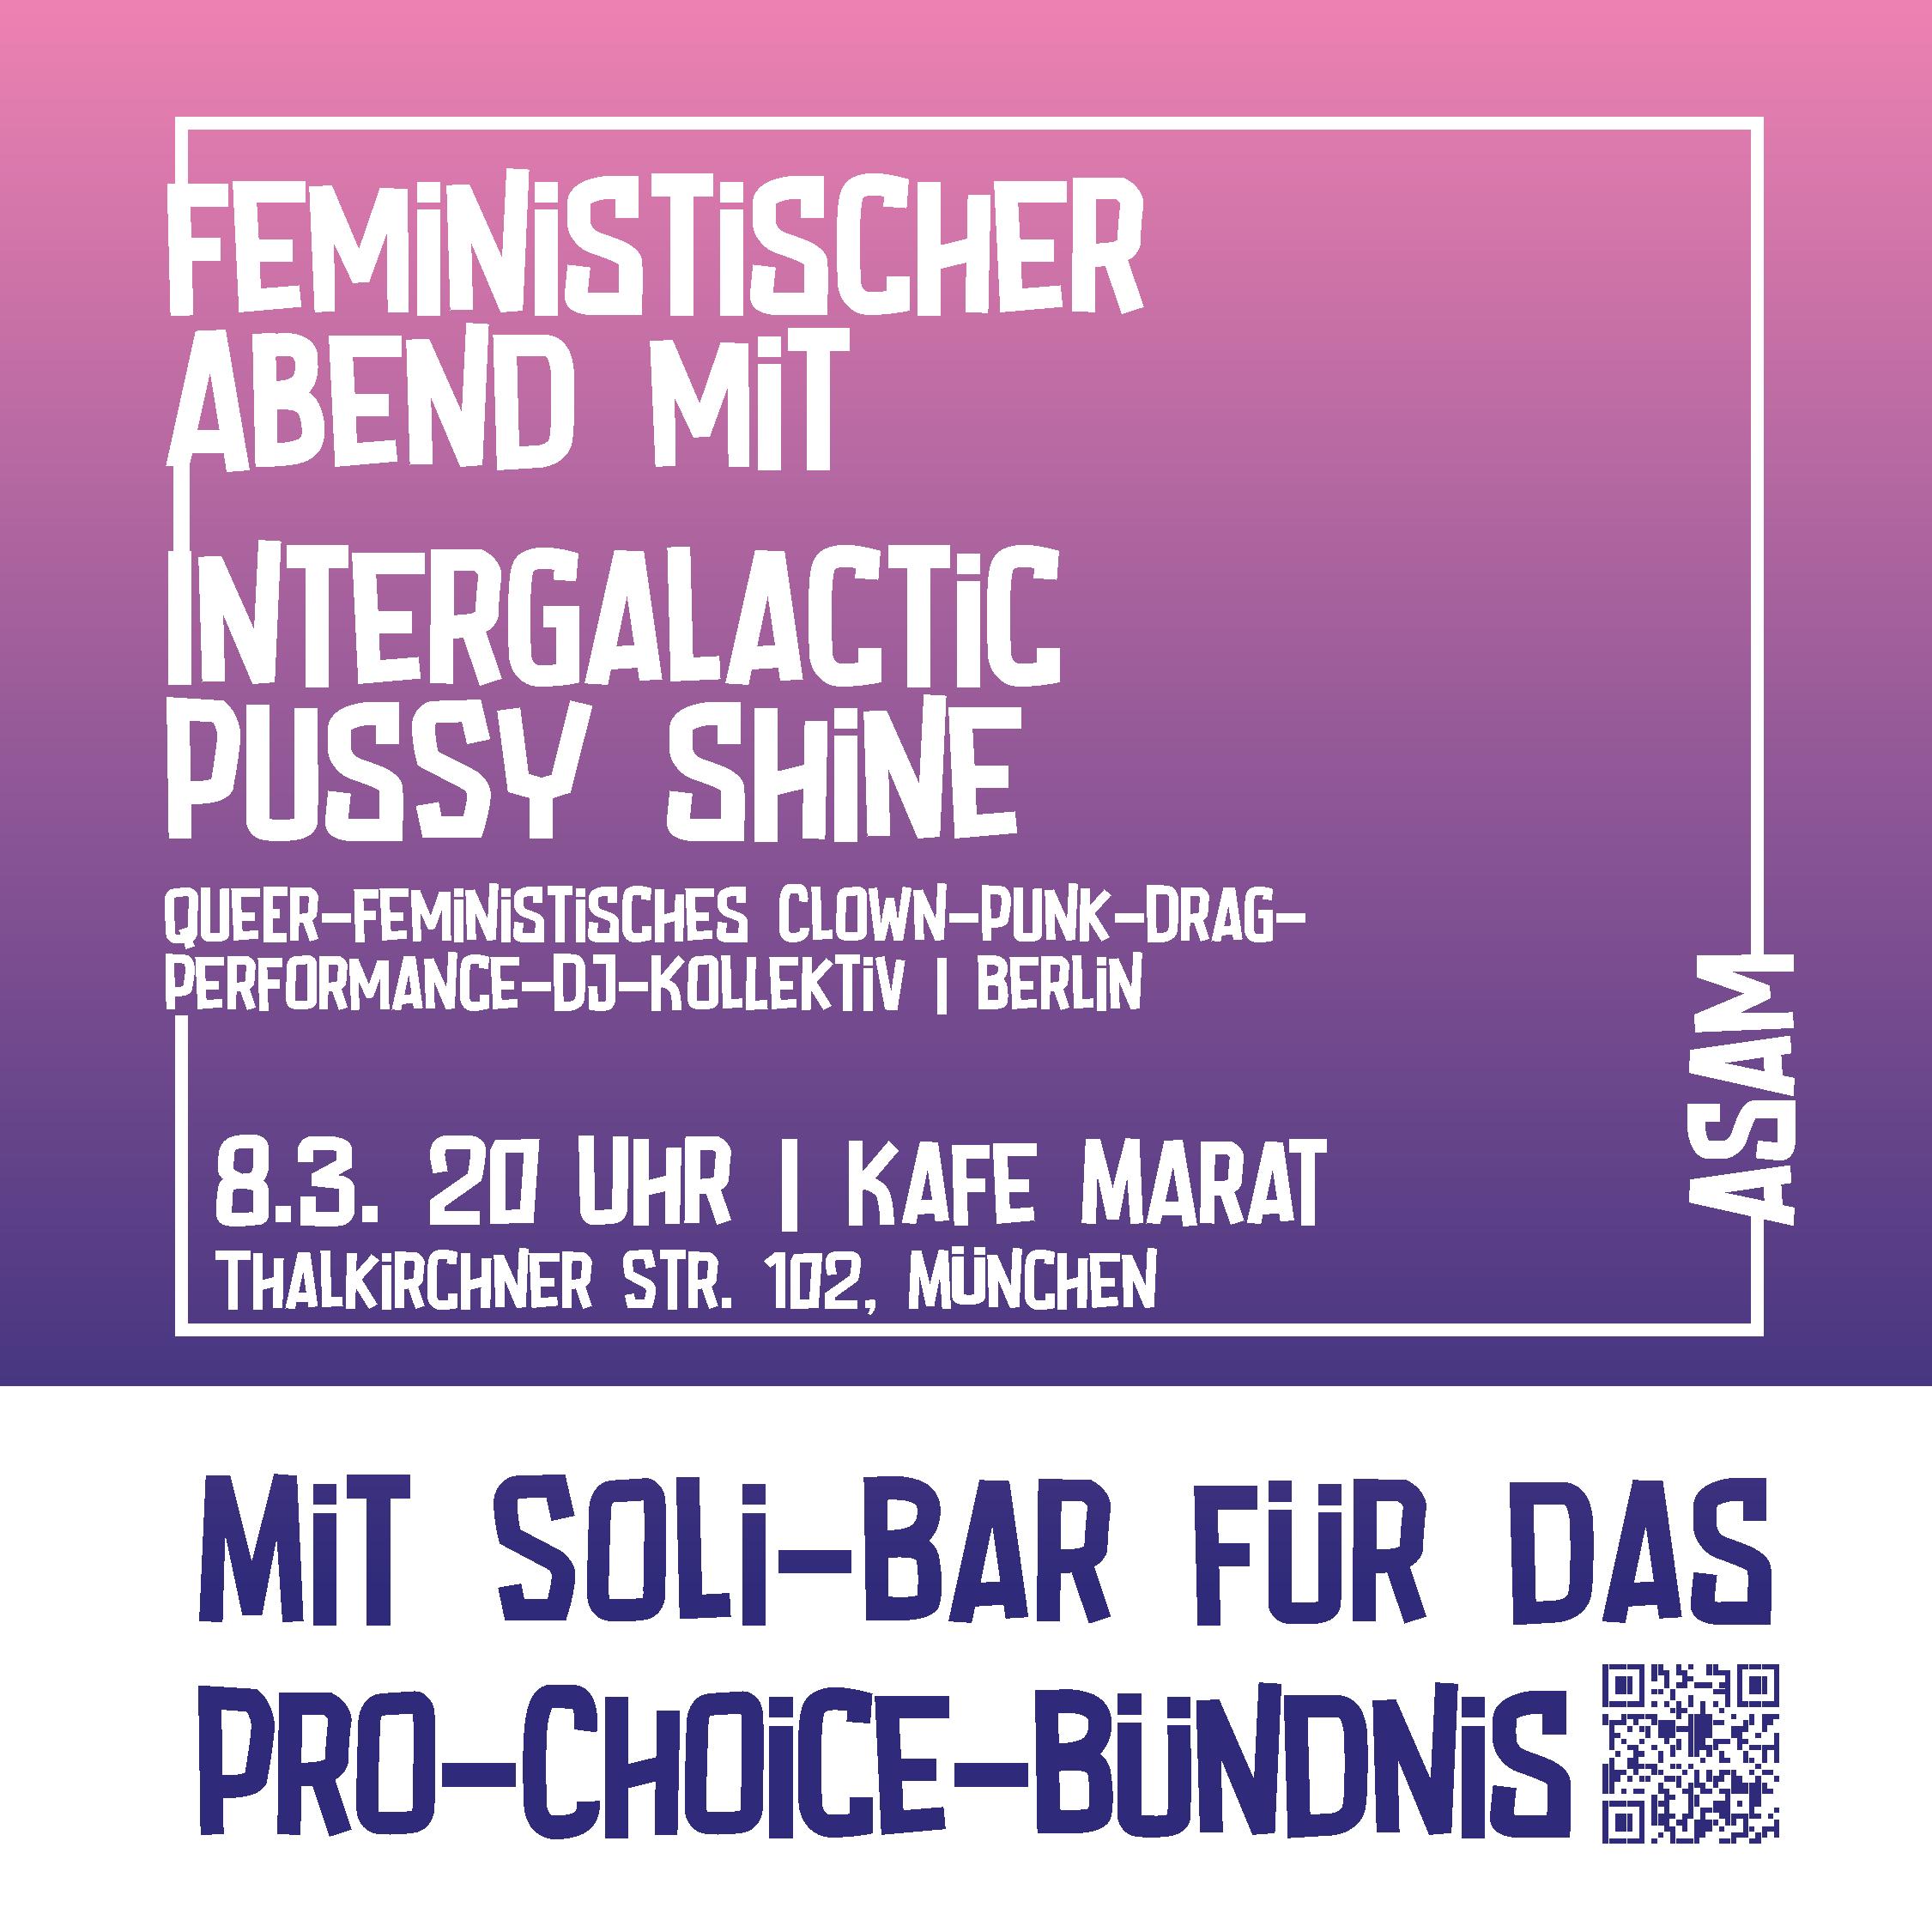 Feministischer Abend mit Intergalatic Pussy Shine, 8.3. 20 Uhr, Kafe Marat